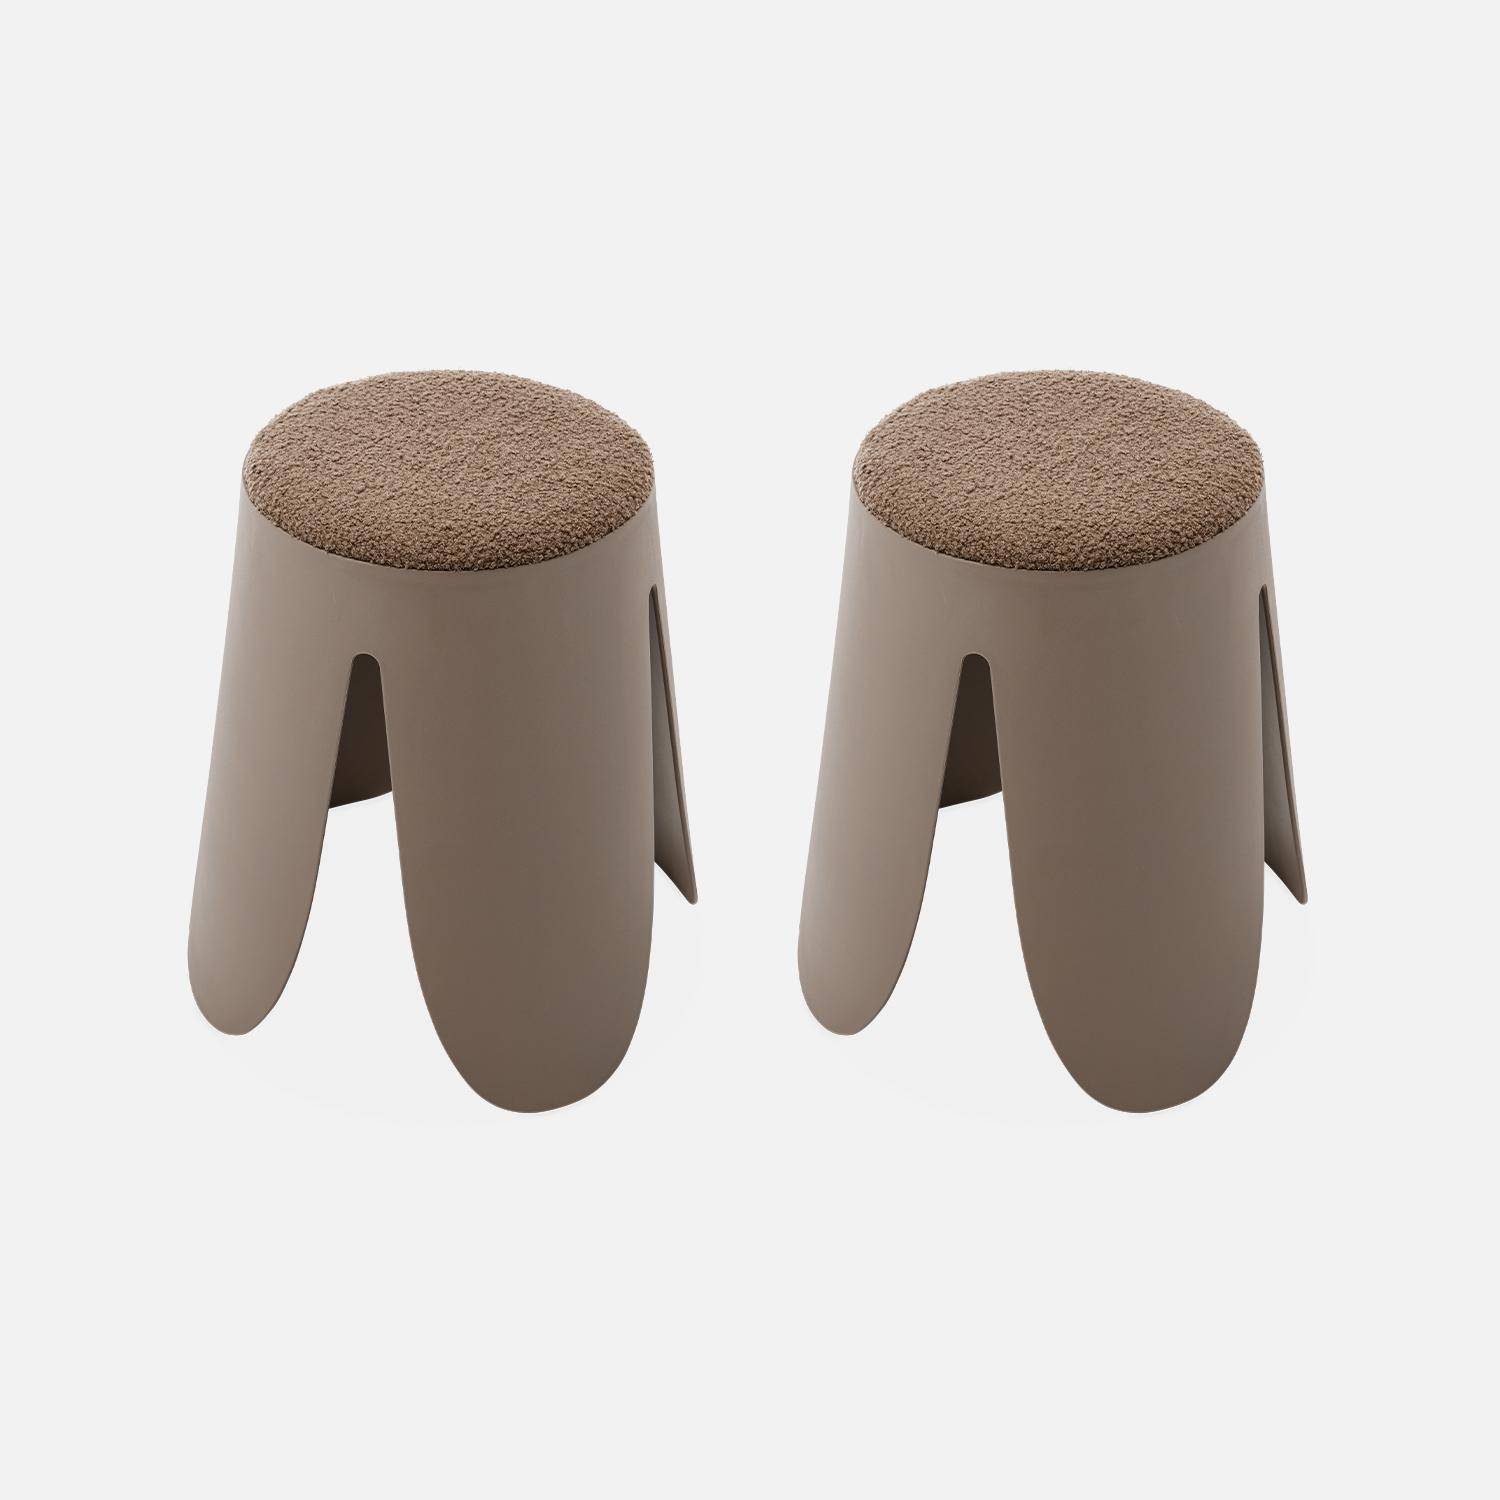 Juego de 2 taburetes apilables de madera, taburete redondo apilable  creativo, sillas de comedor modernas con agujeros con tapetes  antideslizantes